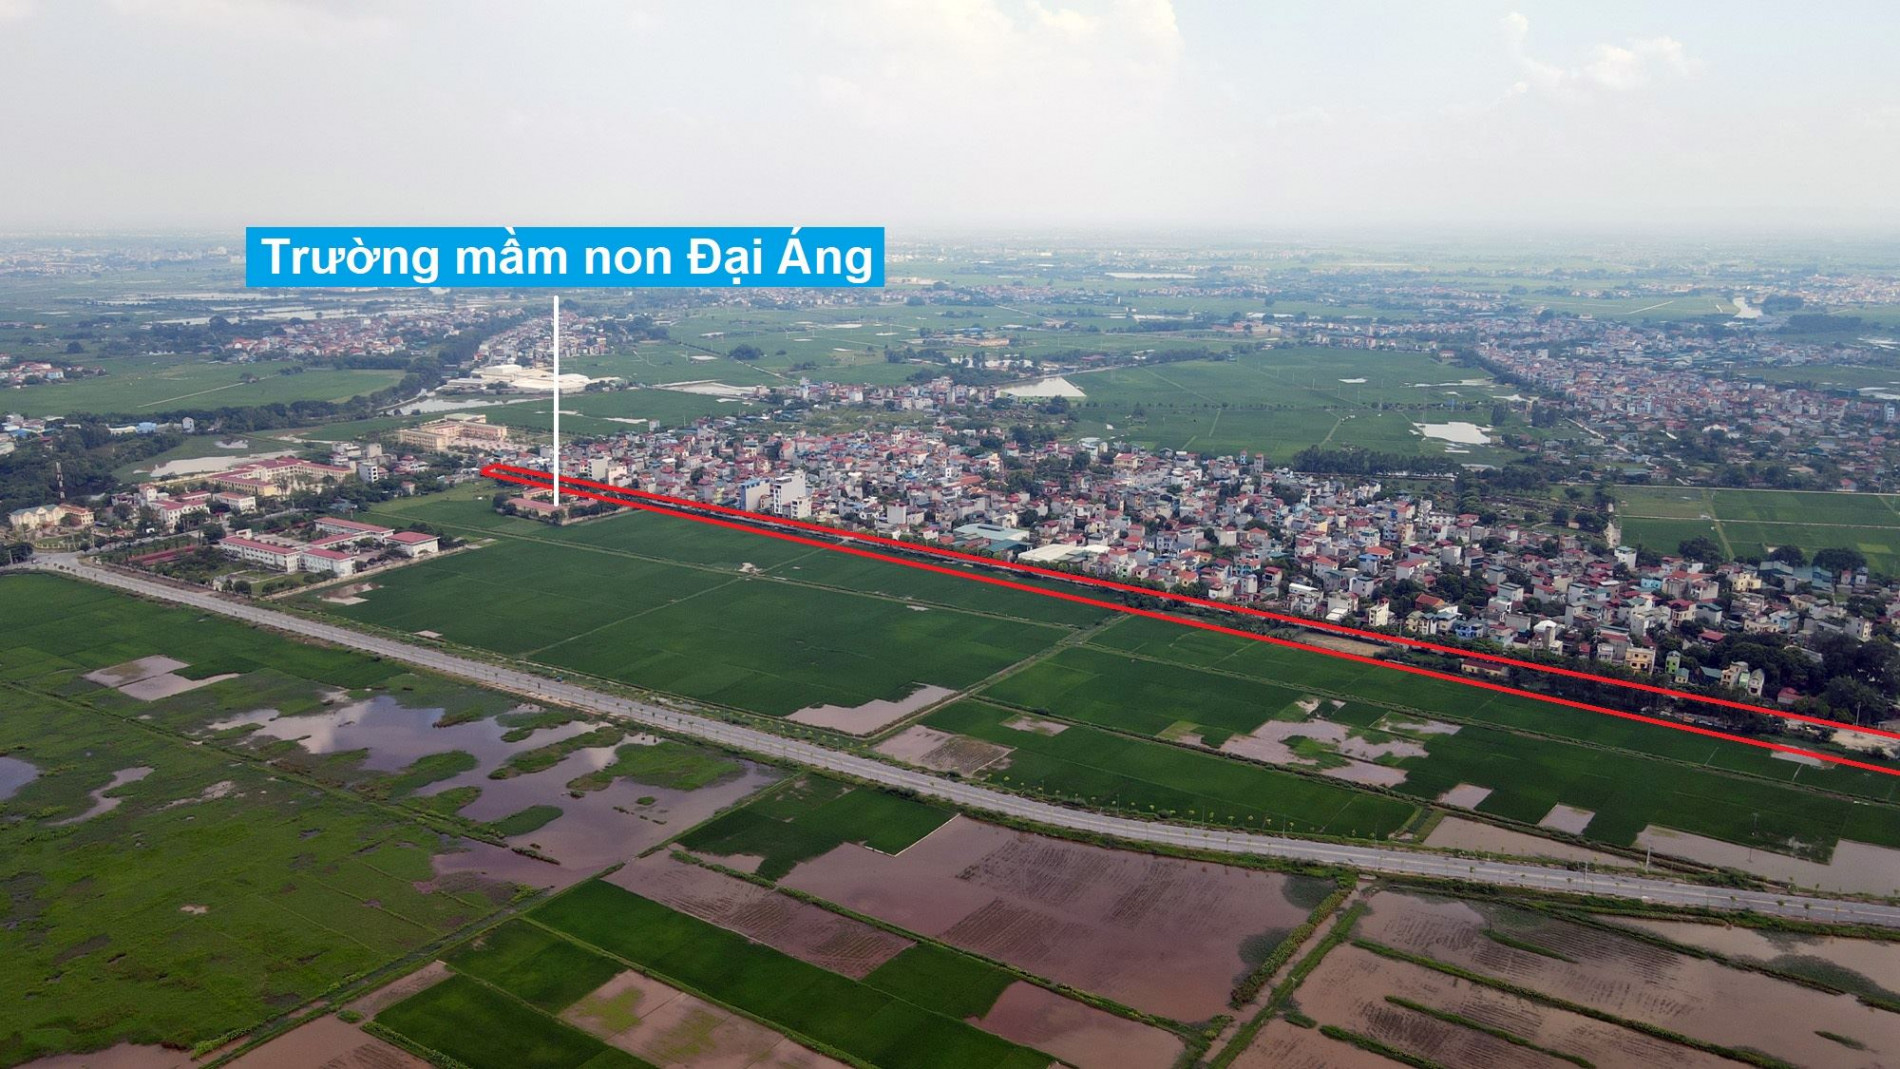 Đường sẽ mở theo quy hoạch xã Đại Áng, Thanh Trì, Hà Nội (phần 2)